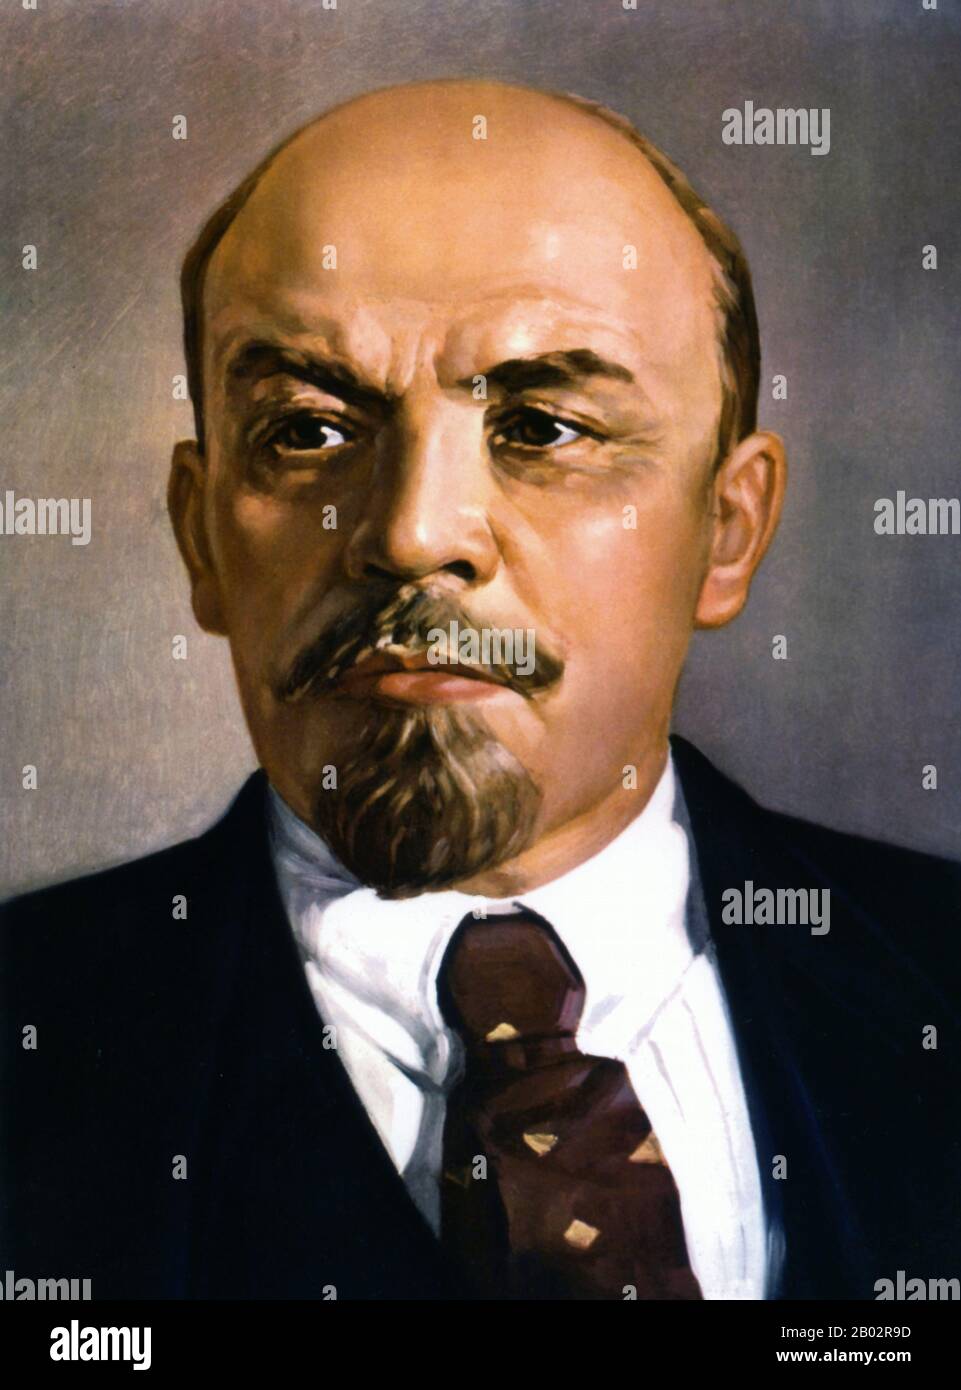 Vladimir Ilyich Lénine, né à Vladimir Ilyich Ulyanov (22 avril 1870 – 21 janvier 1924), était un révolutionnaire communiste russe, politicien et théoricien politique. Lénine a été le chef de la République socialiste fédérative soviétique de Russie à partir de 1917, puis en même temps comme premier ministre de l'Union soviétique à partir de 1922, jusqu'à sa mort. Sous son administration, l'Empire russe s'est désintégré et a été remplacé par l'Union soviétique, un État socialiste constitutionnellement à parti unique; toutes les richesses, y compris la terre, l'industrie et les entreprises, ont été nationalisées. Basé dans le marxisme, ses contributions théoriques à Ma Banque D'Images